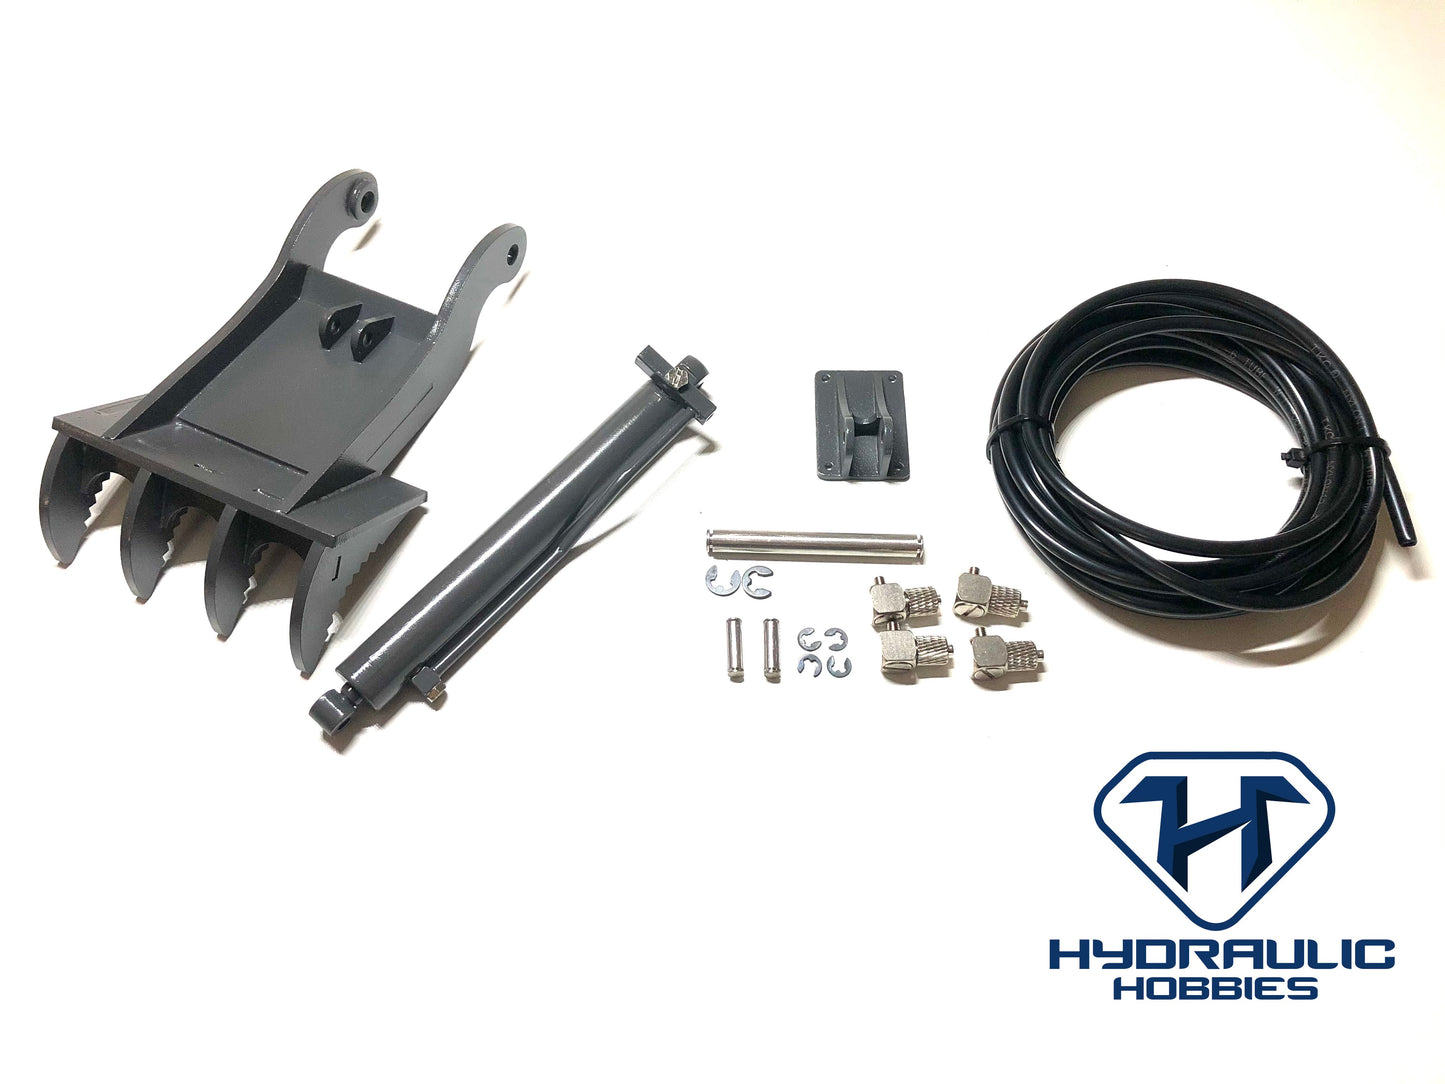 JD 360L Hydraulic Thumb Kit